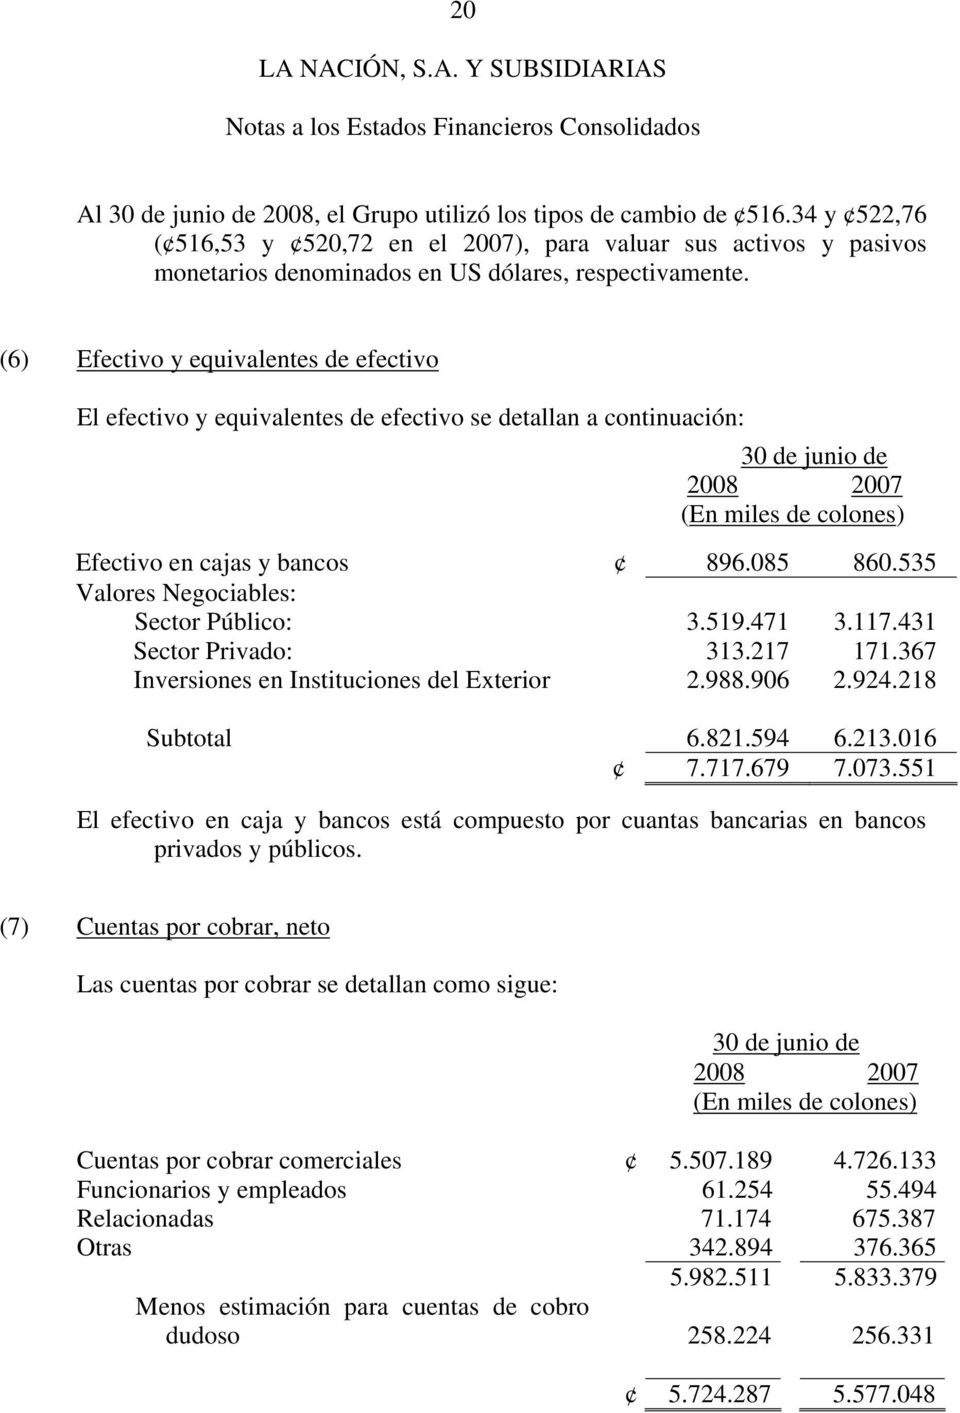 (6) Efectivo y equivalentes de efectivo El efectivo y equivalentes de efectivo se detallan a continuación: 30 de junio de 2008 2007 (En miles de colones) Efectivo en cajas y bancos 896.085 860.